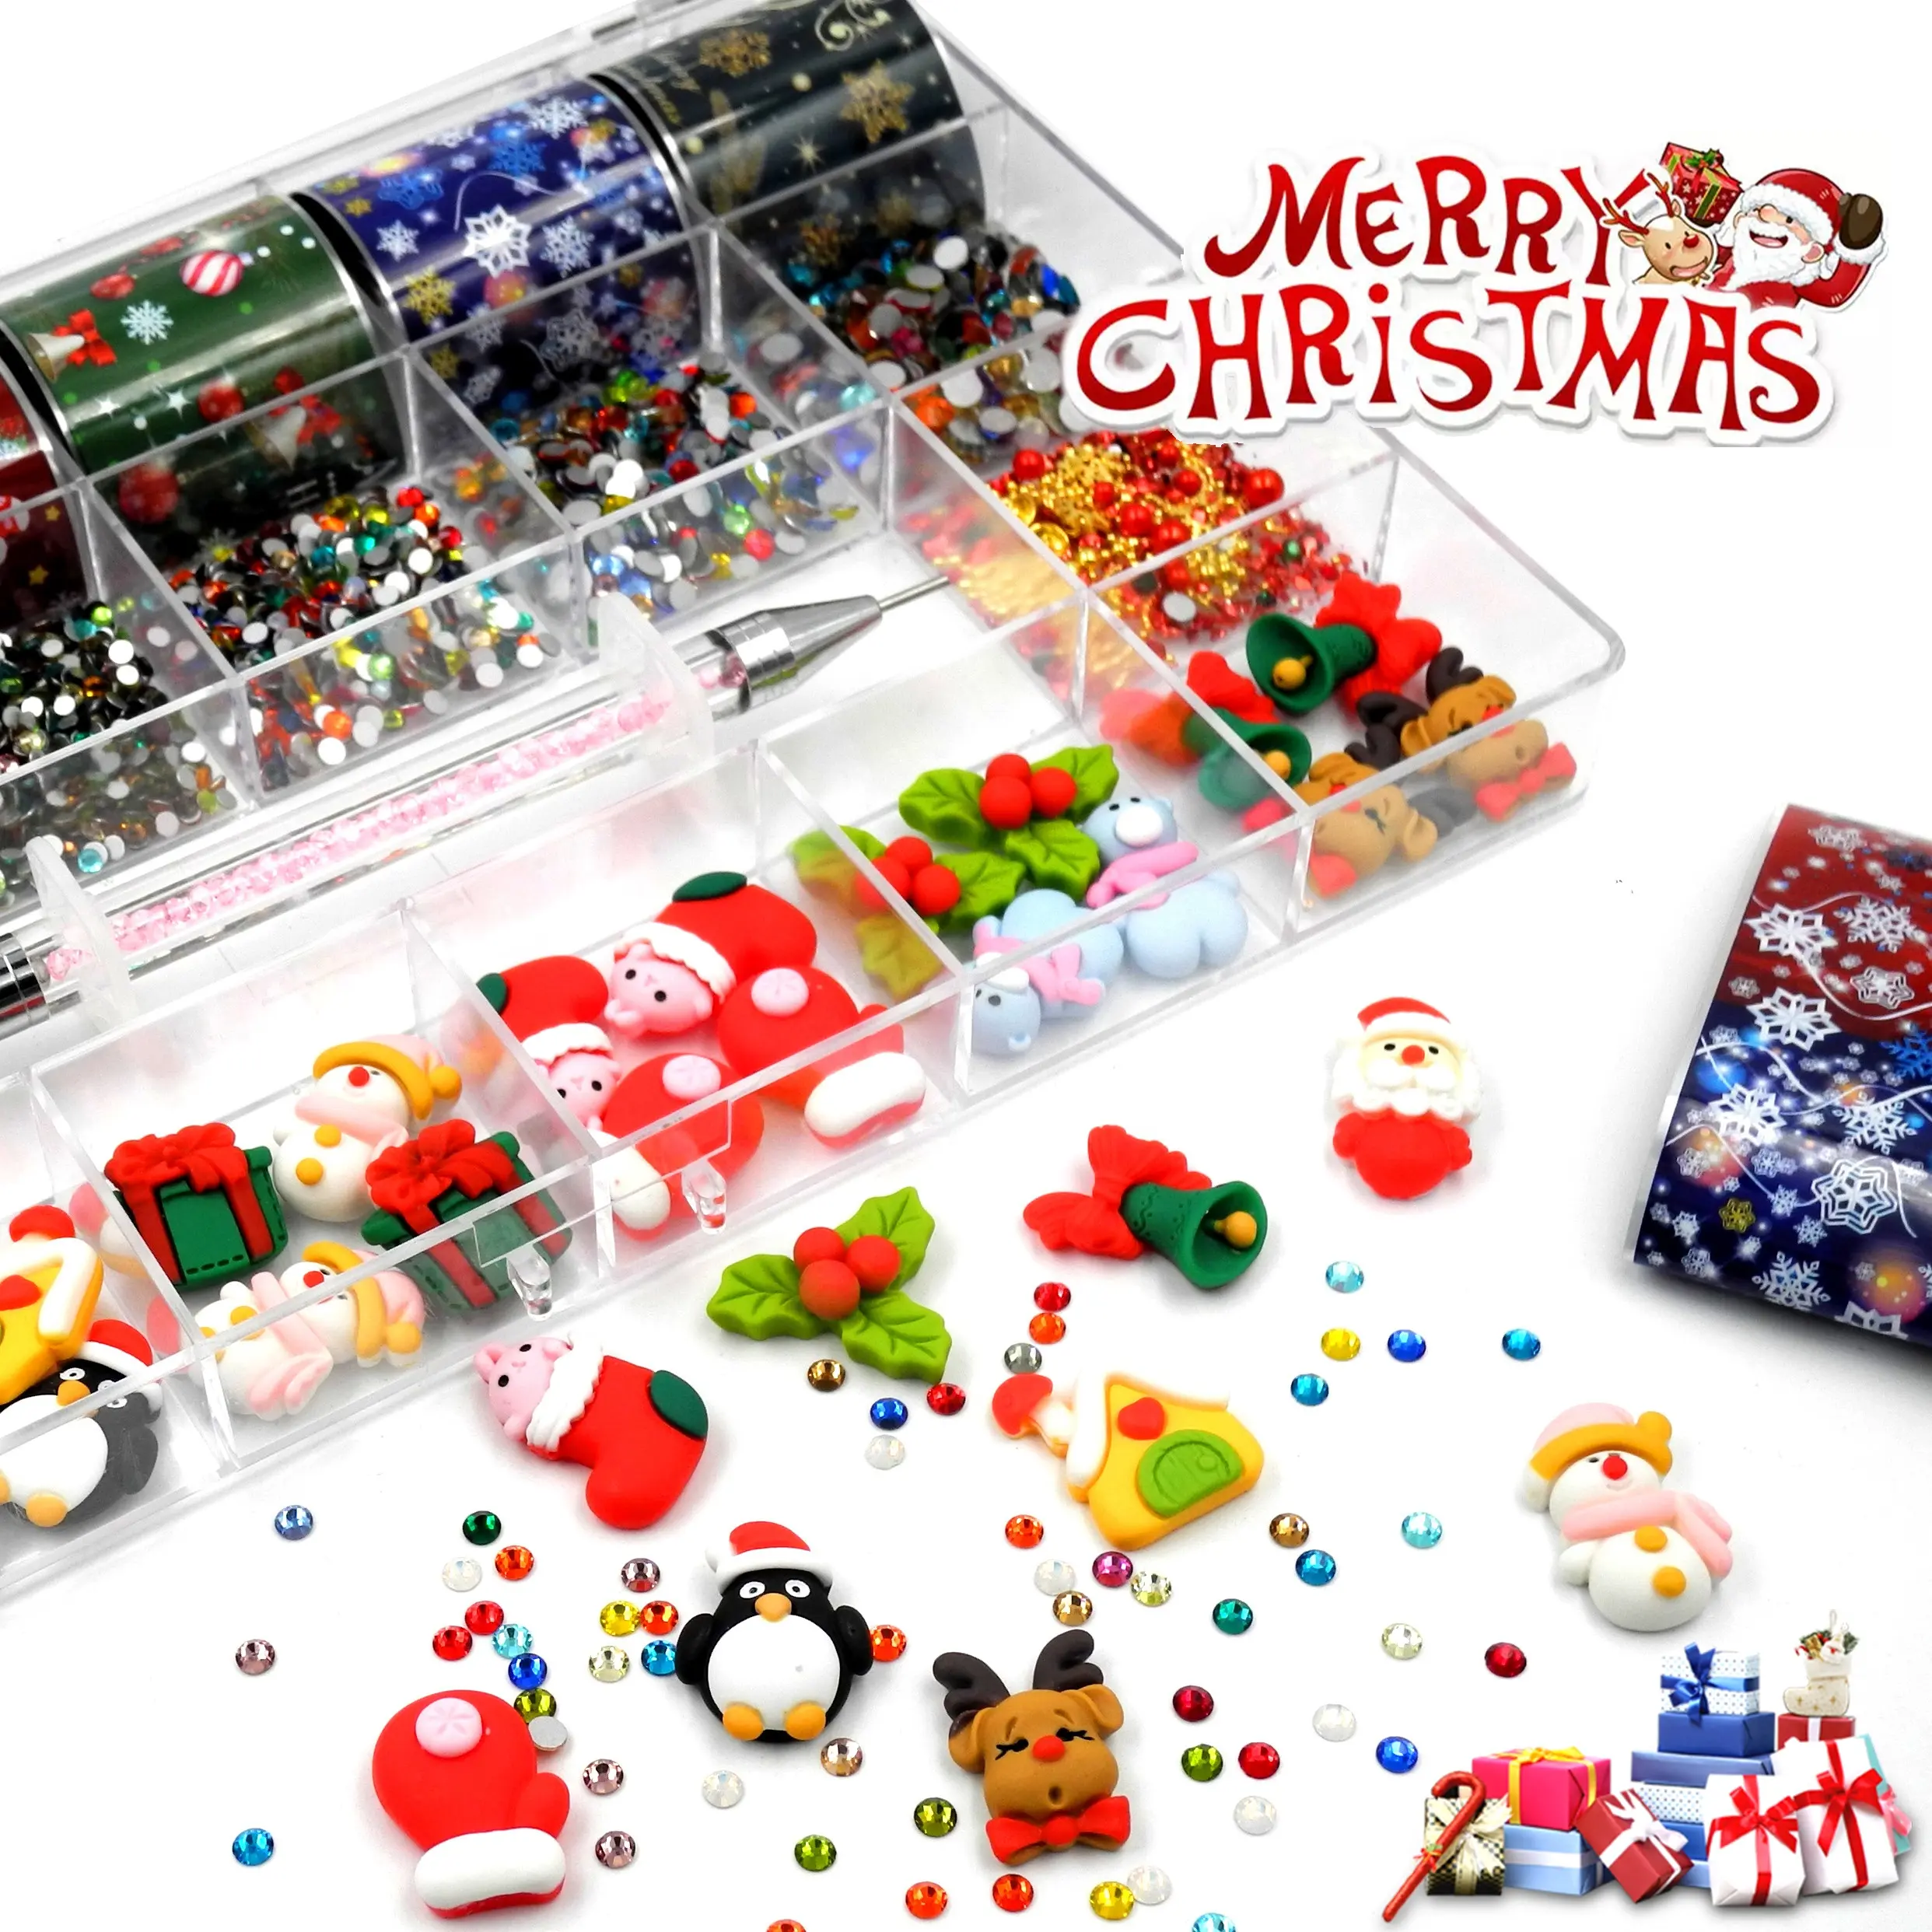 Caixa de joias de luxo para arte em unhas, conjunto de decorações natalinas, caixa de joias de luxo com design misto, adesivo de resina para unhas 5d